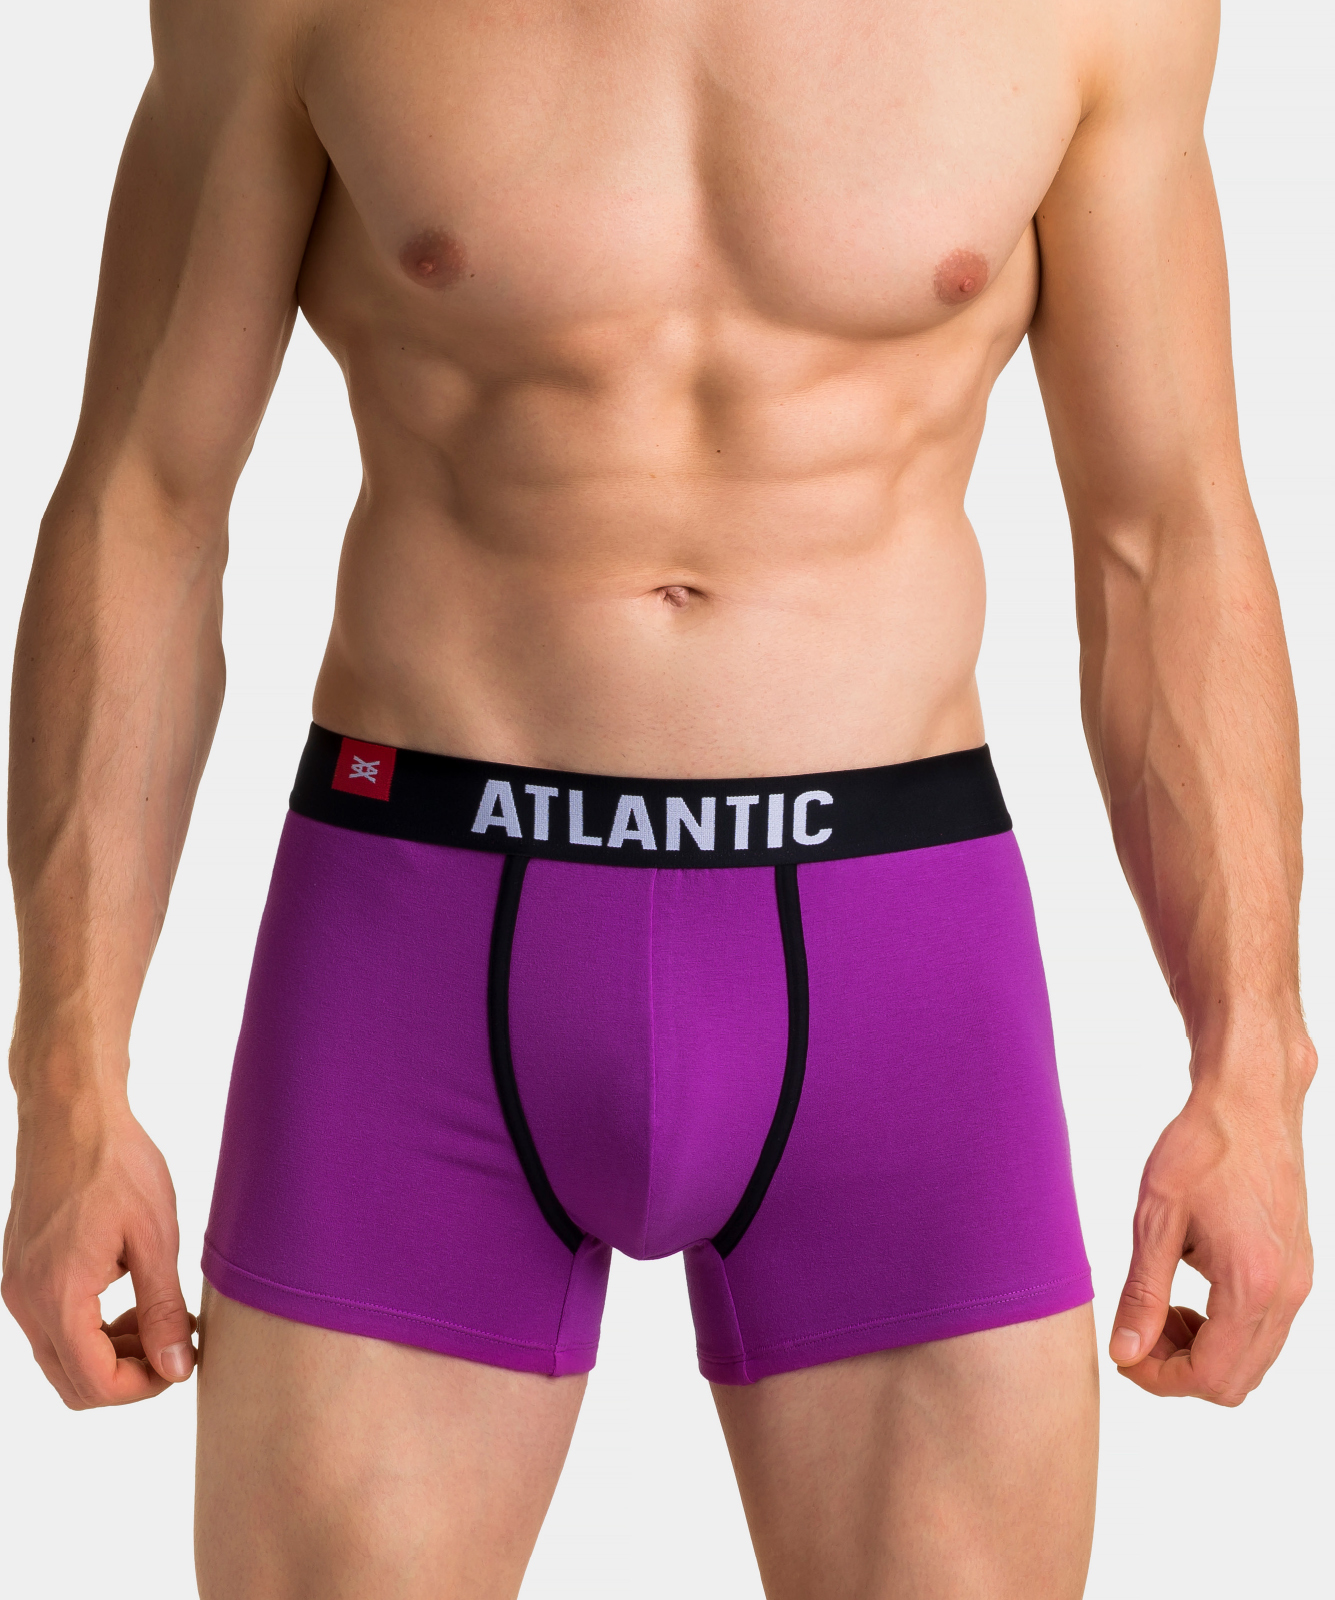 Atlantic мужские шорты Energy 3SMH-002, Фиолетовый